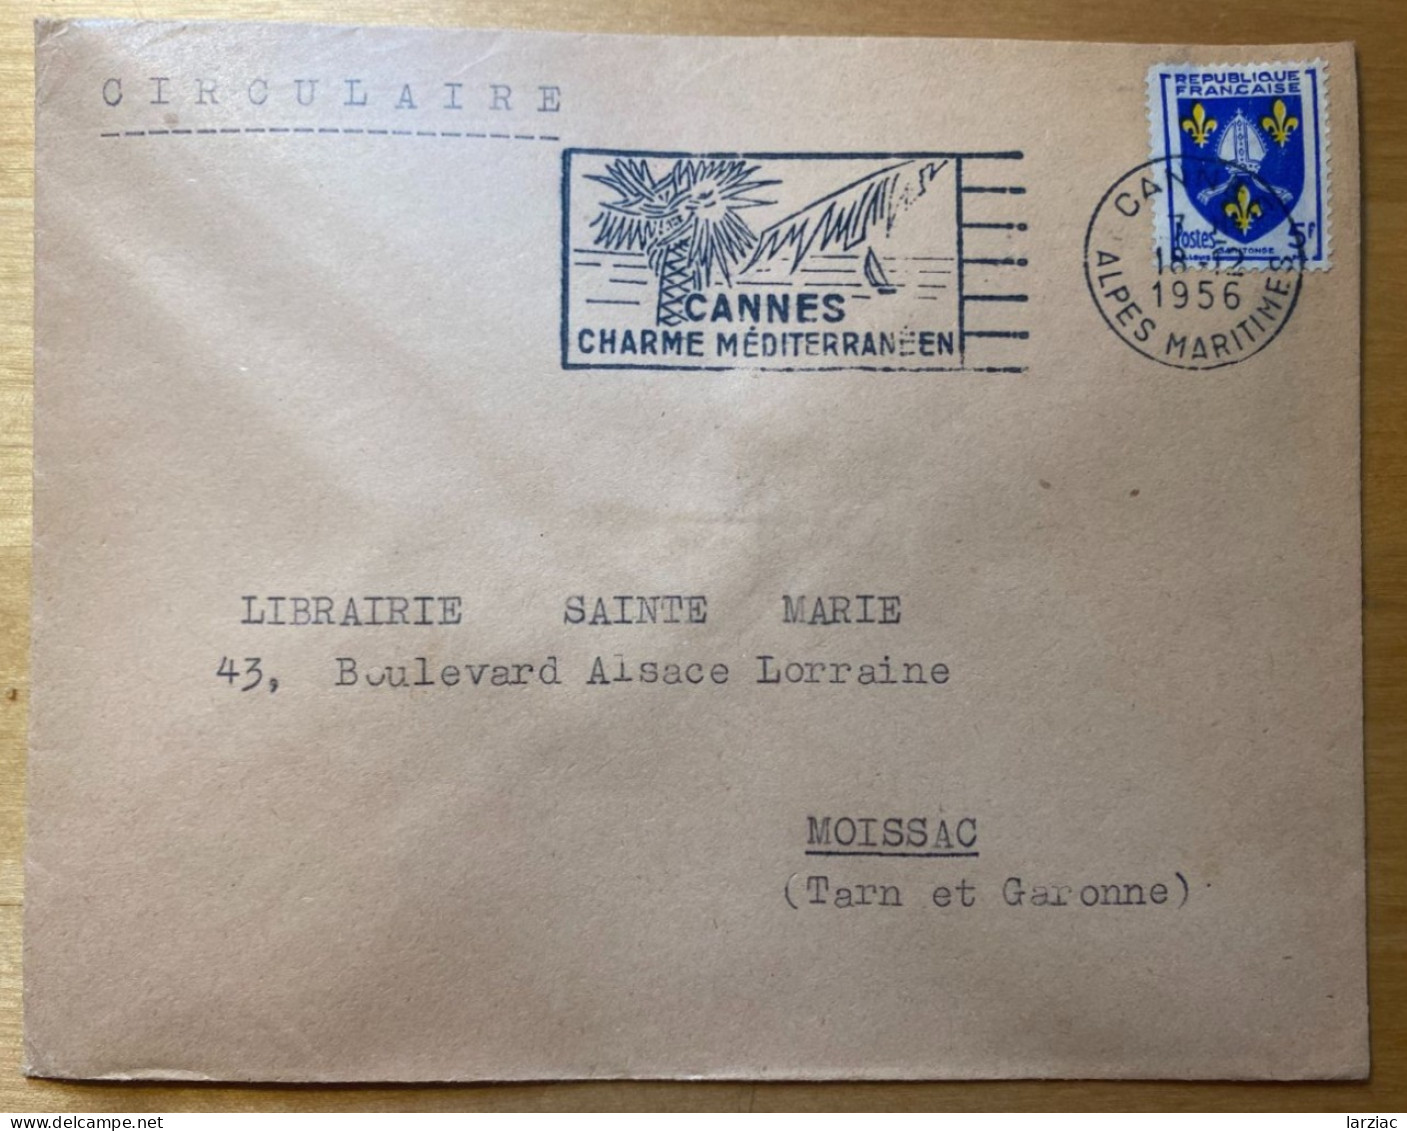 Enveloppe Affranchie Blason Saintonge Oblitération Flamme Cannes Alpes Maritimes 1956 Tarif Circulaire - Tariffe Postali